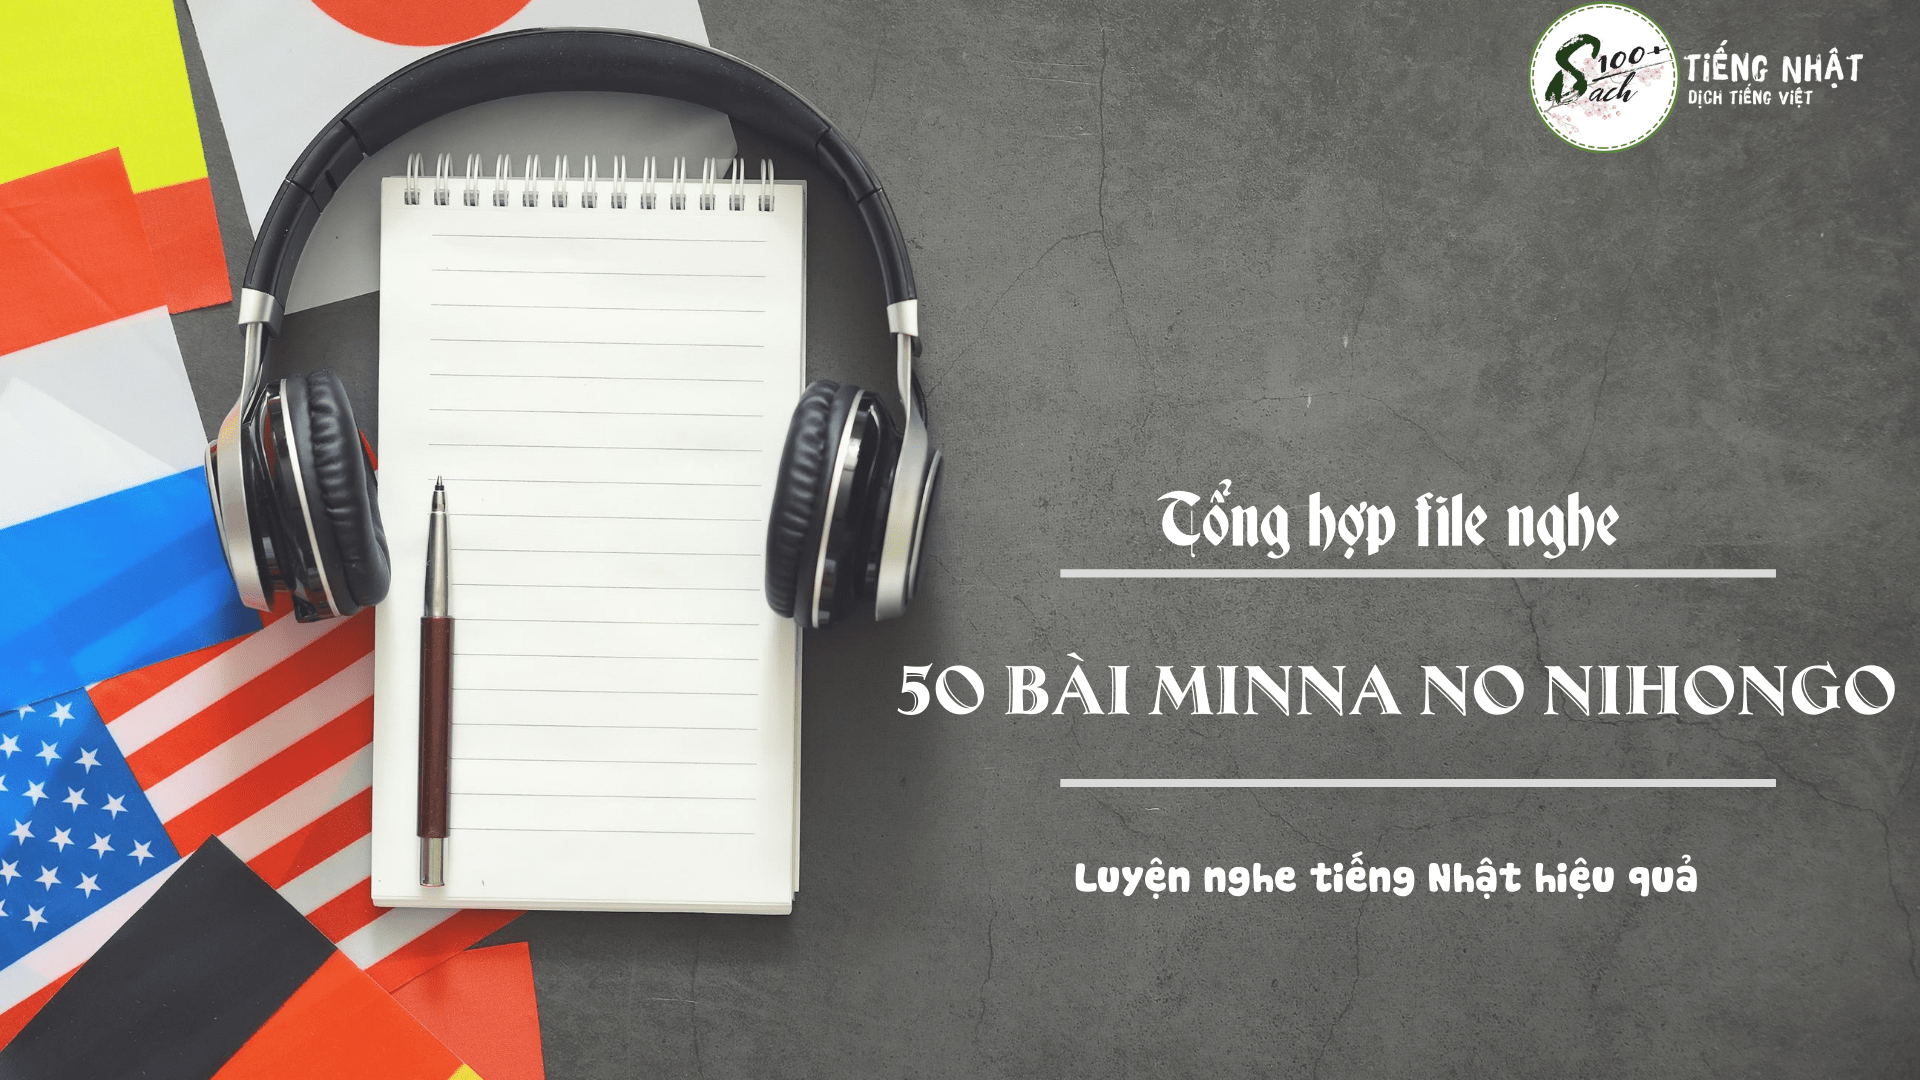 minna no nihongo audio files free download